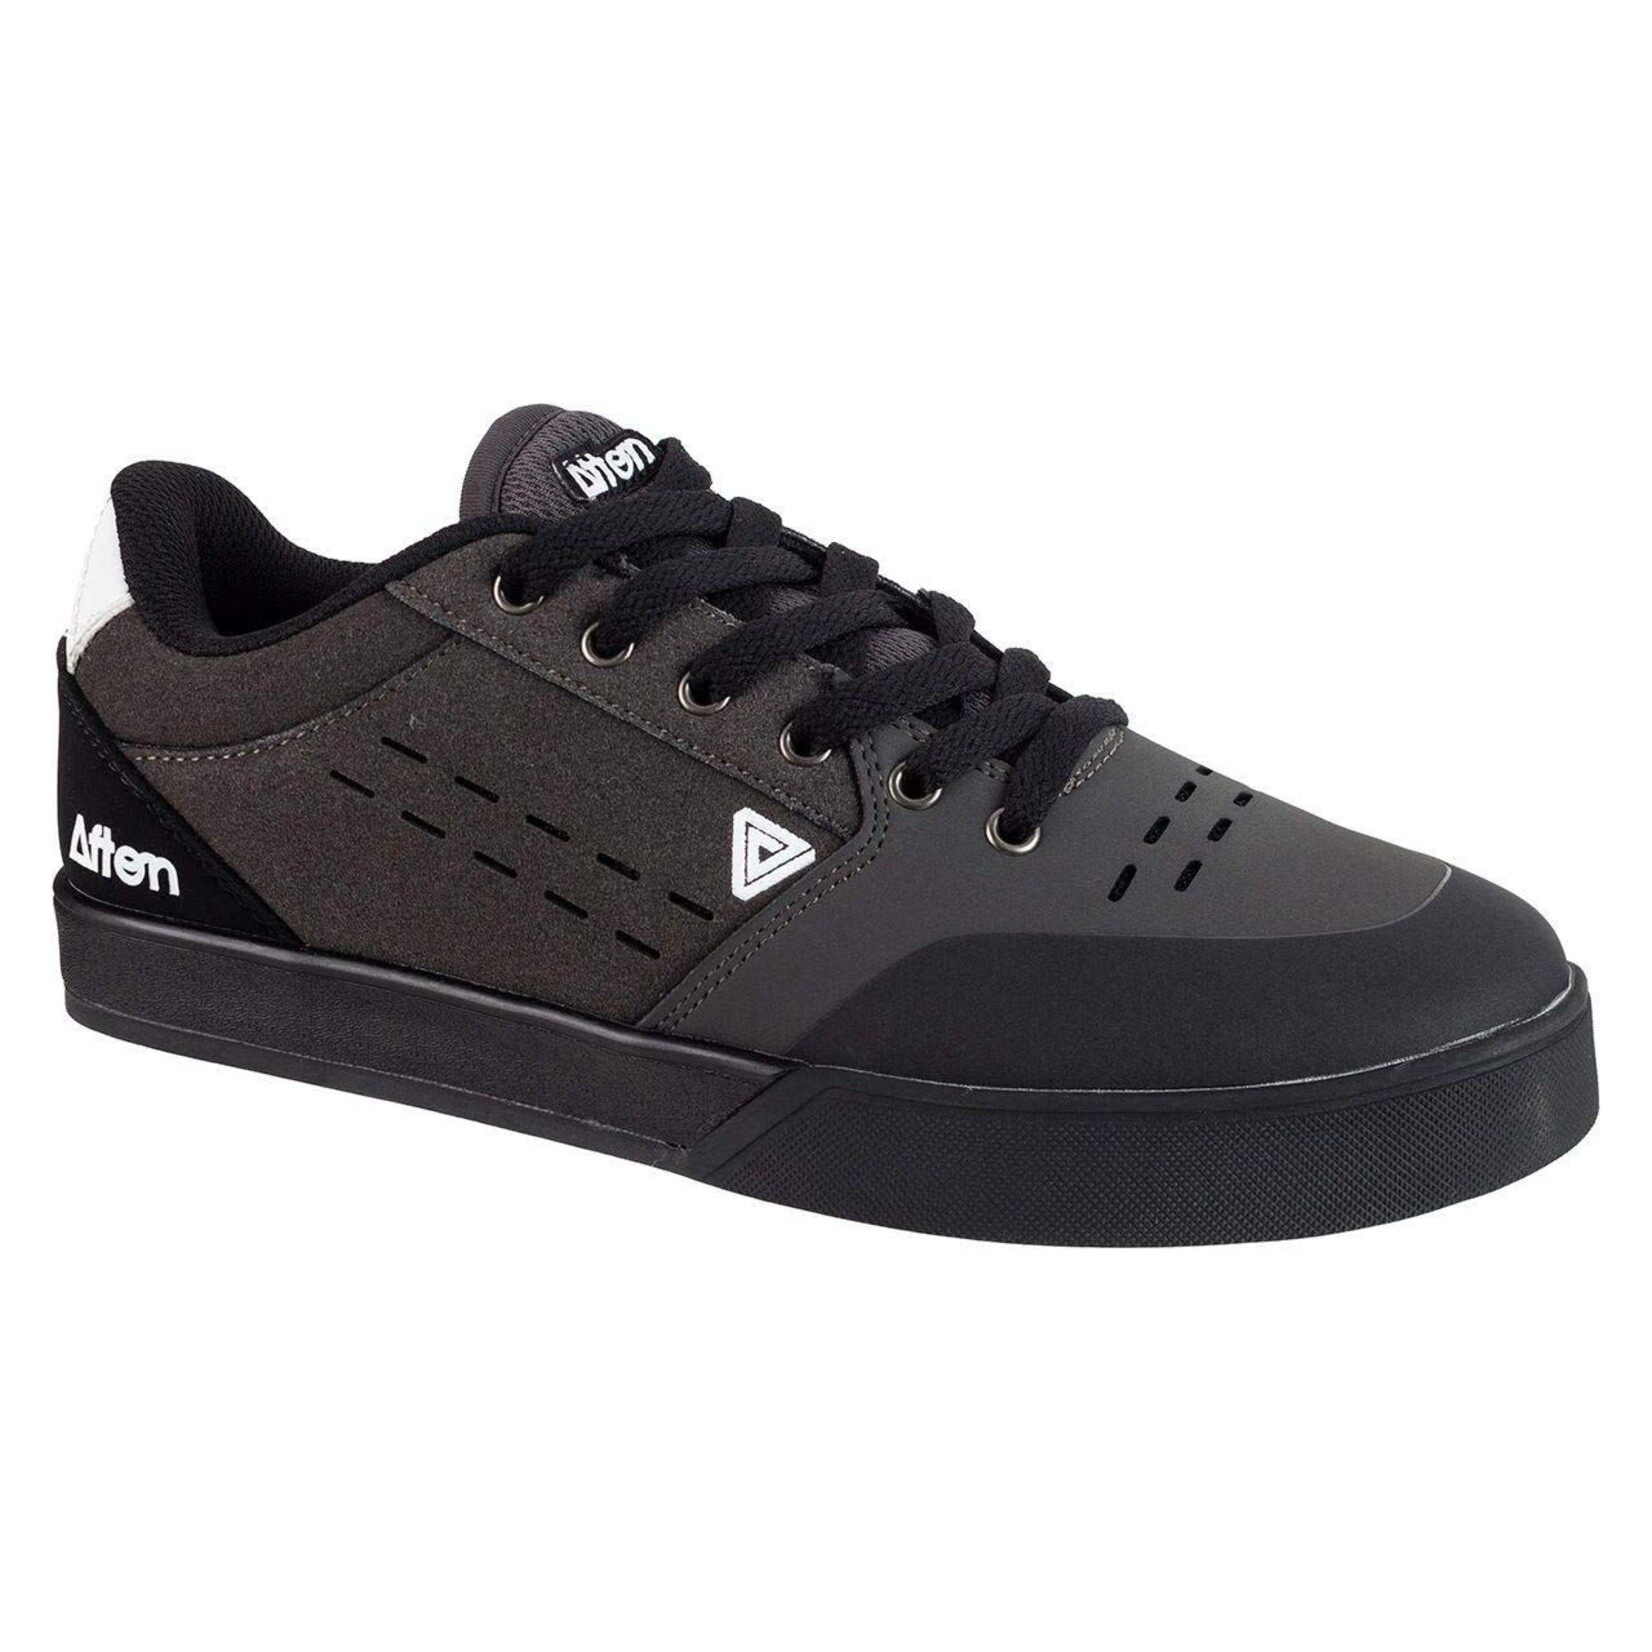 Afton Afton Keegan Platform Shoe, Black/Grey, US 9.5